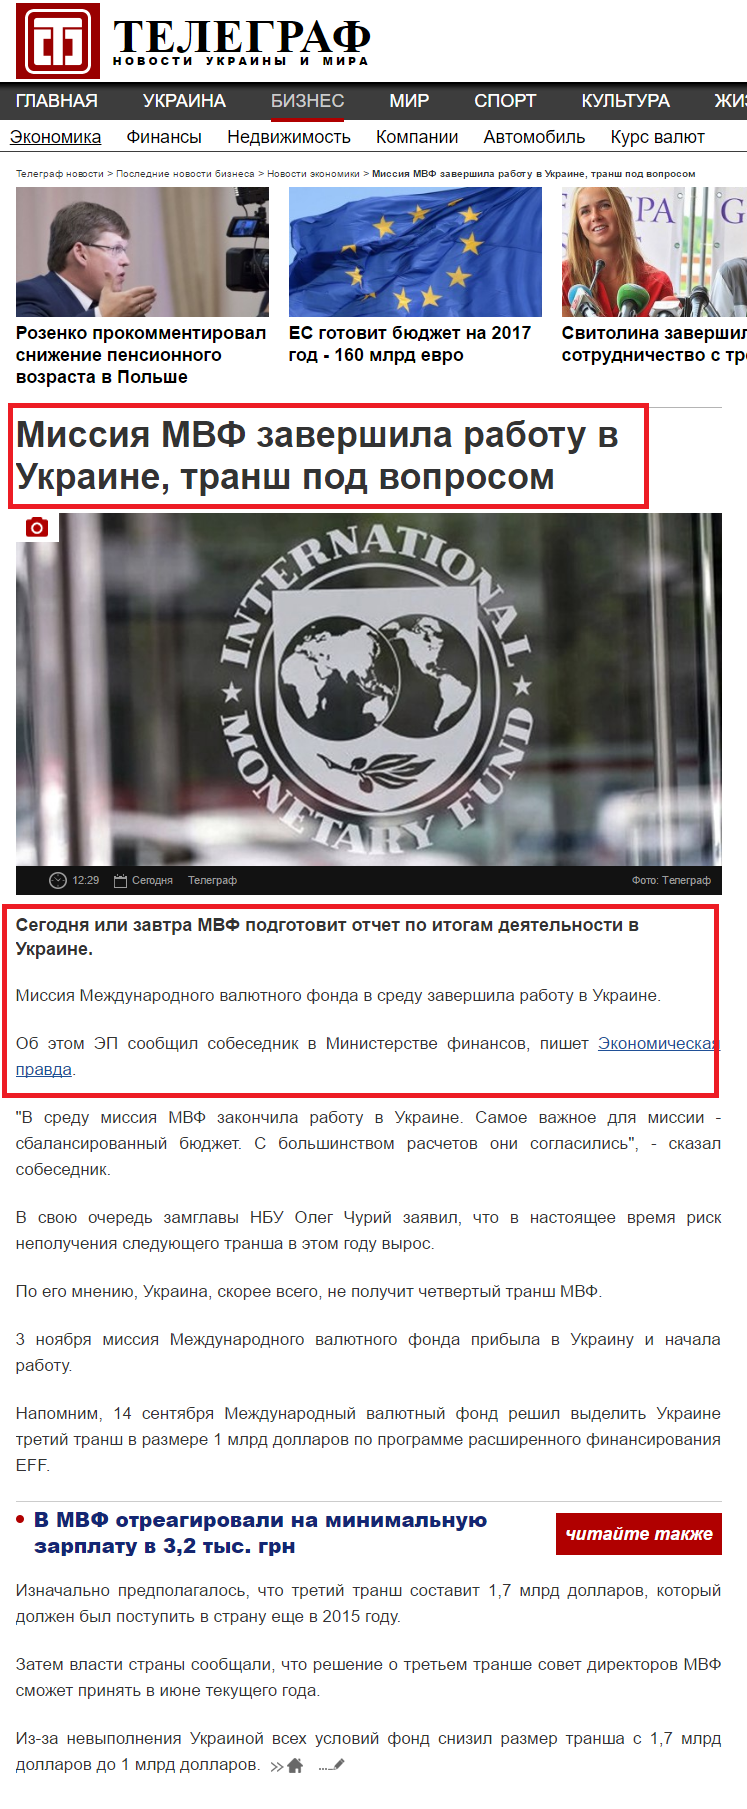 http://telegraf.com.ua/biznes/ekonomika/2980738-missiya-mvf-zavershila-rabotu-v-ukraine-transh-pod-voprosom.html